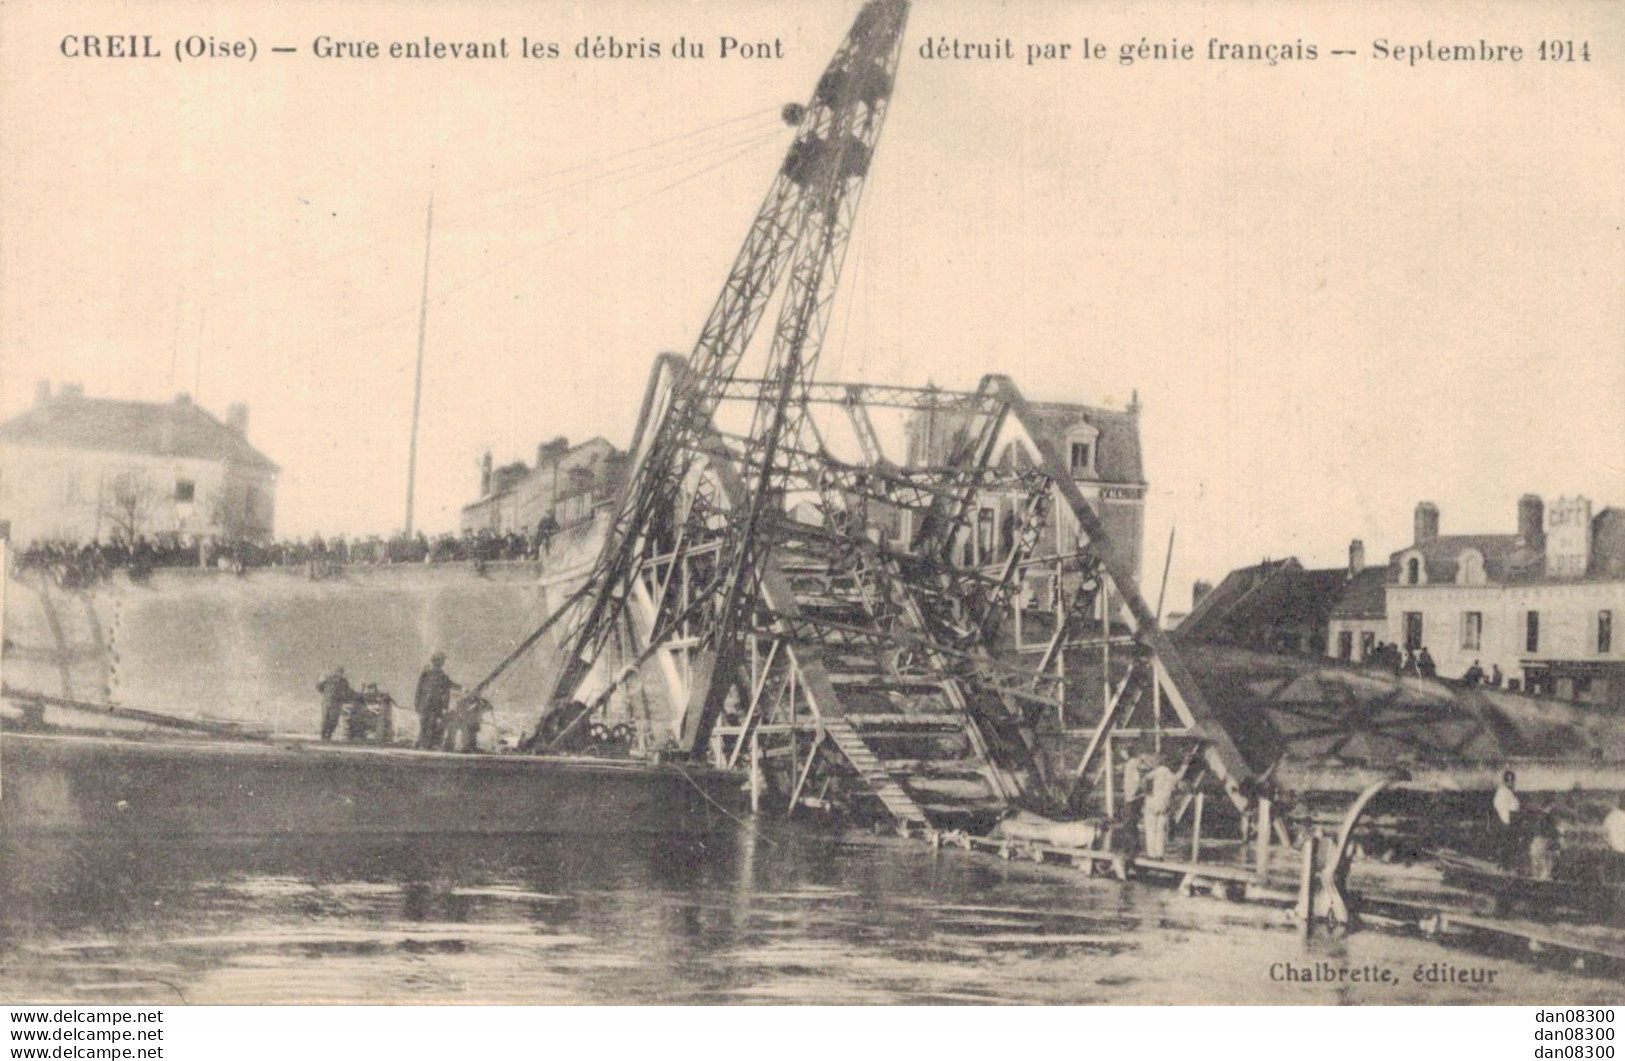 60 CREIL GRUE ENLEVANT LES DEBRIS DU PONT DETRUIT PAR LE GENIE FRANCAIS SEPTEMBRE 1914 - Oorlog 1914-18